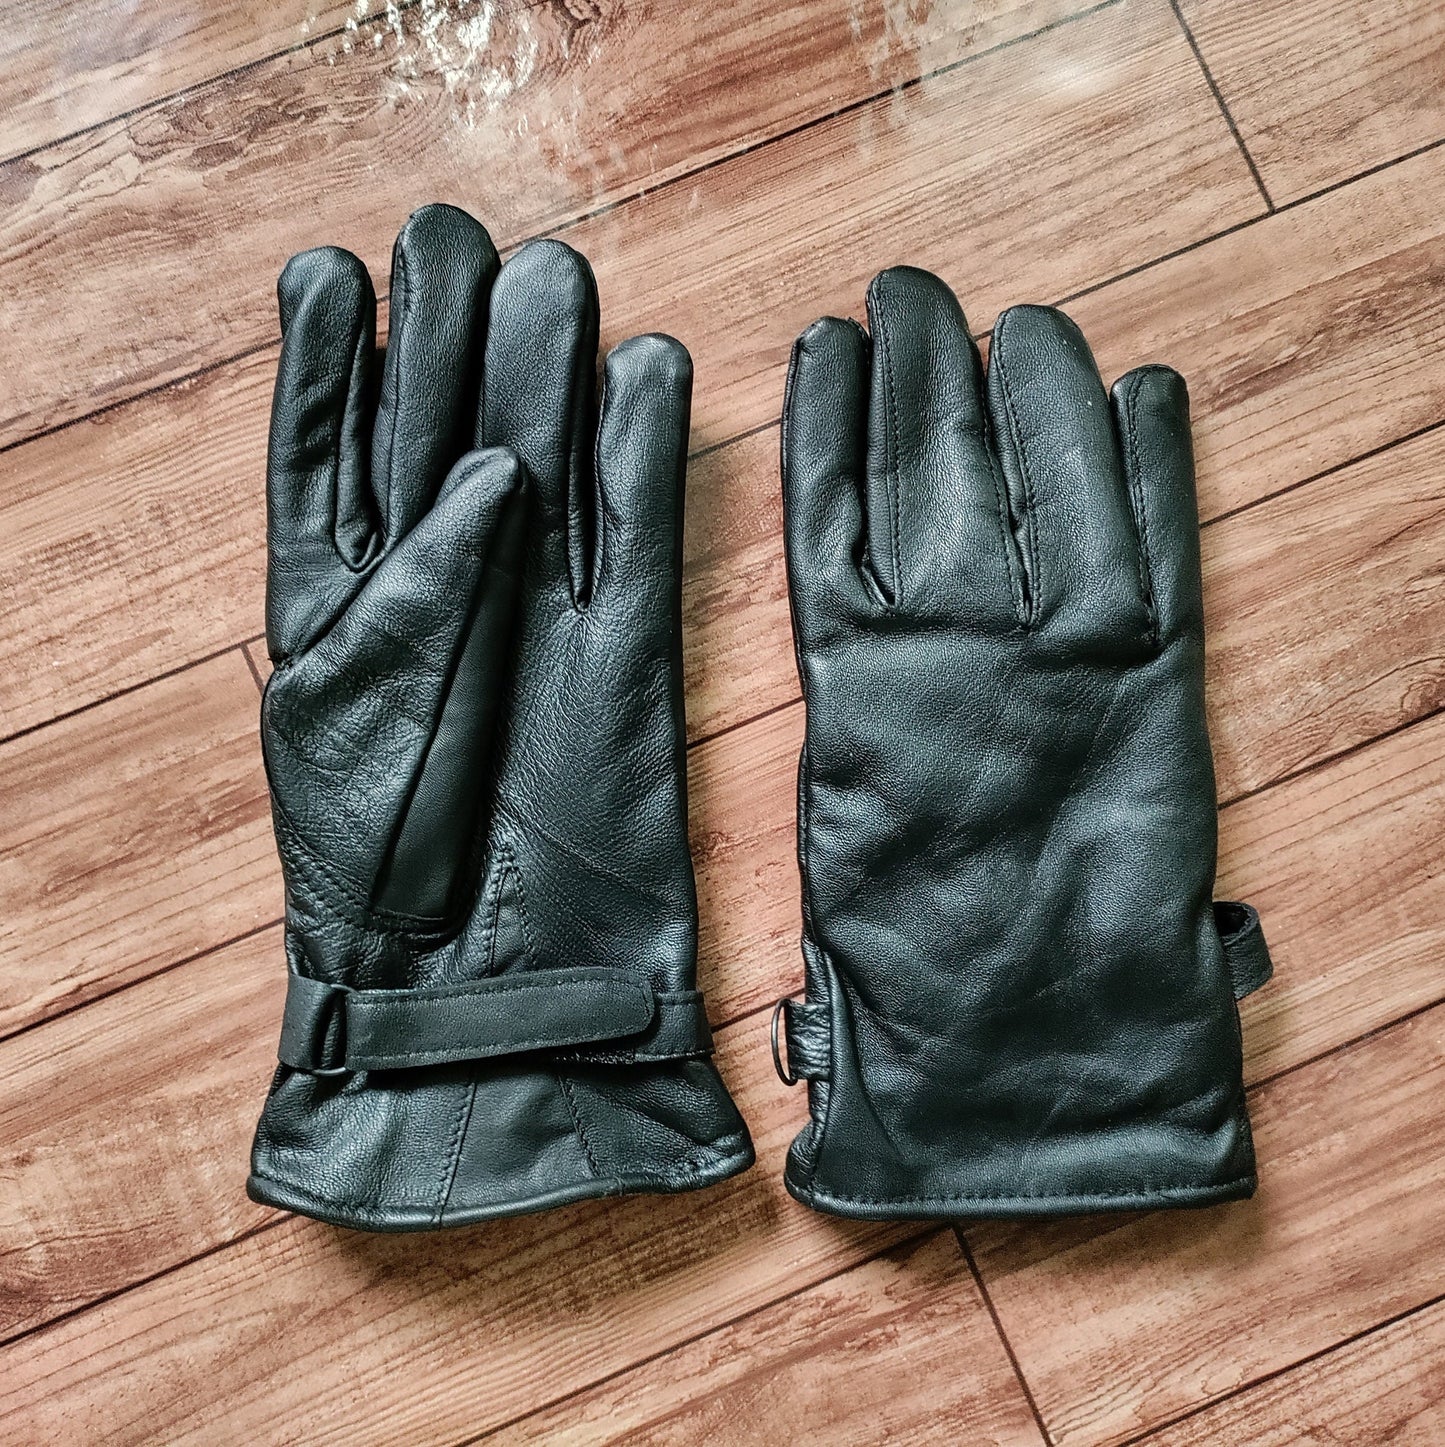 Leather Gloves For Women and Men, Winter Gloves for Warm, Fur Lined Leather Gloves, Glove for Winter, Trekking Gloves